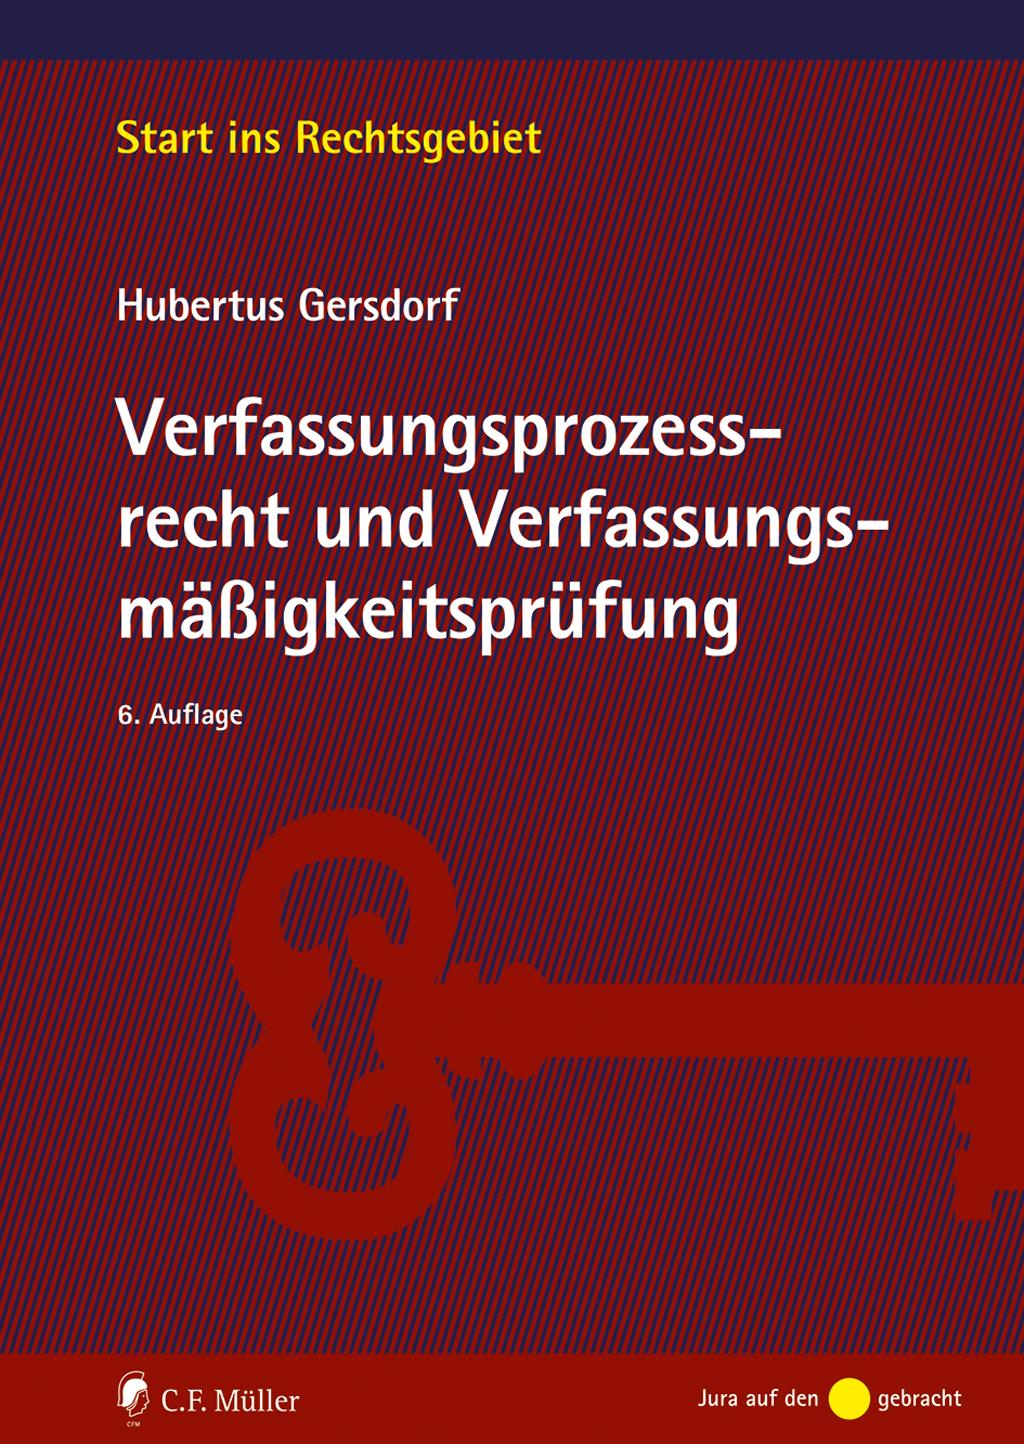 Kniha Verfassungsprozessrecht und Verfassungsmäßigkeitsprüfung Hubertus Gersdorf